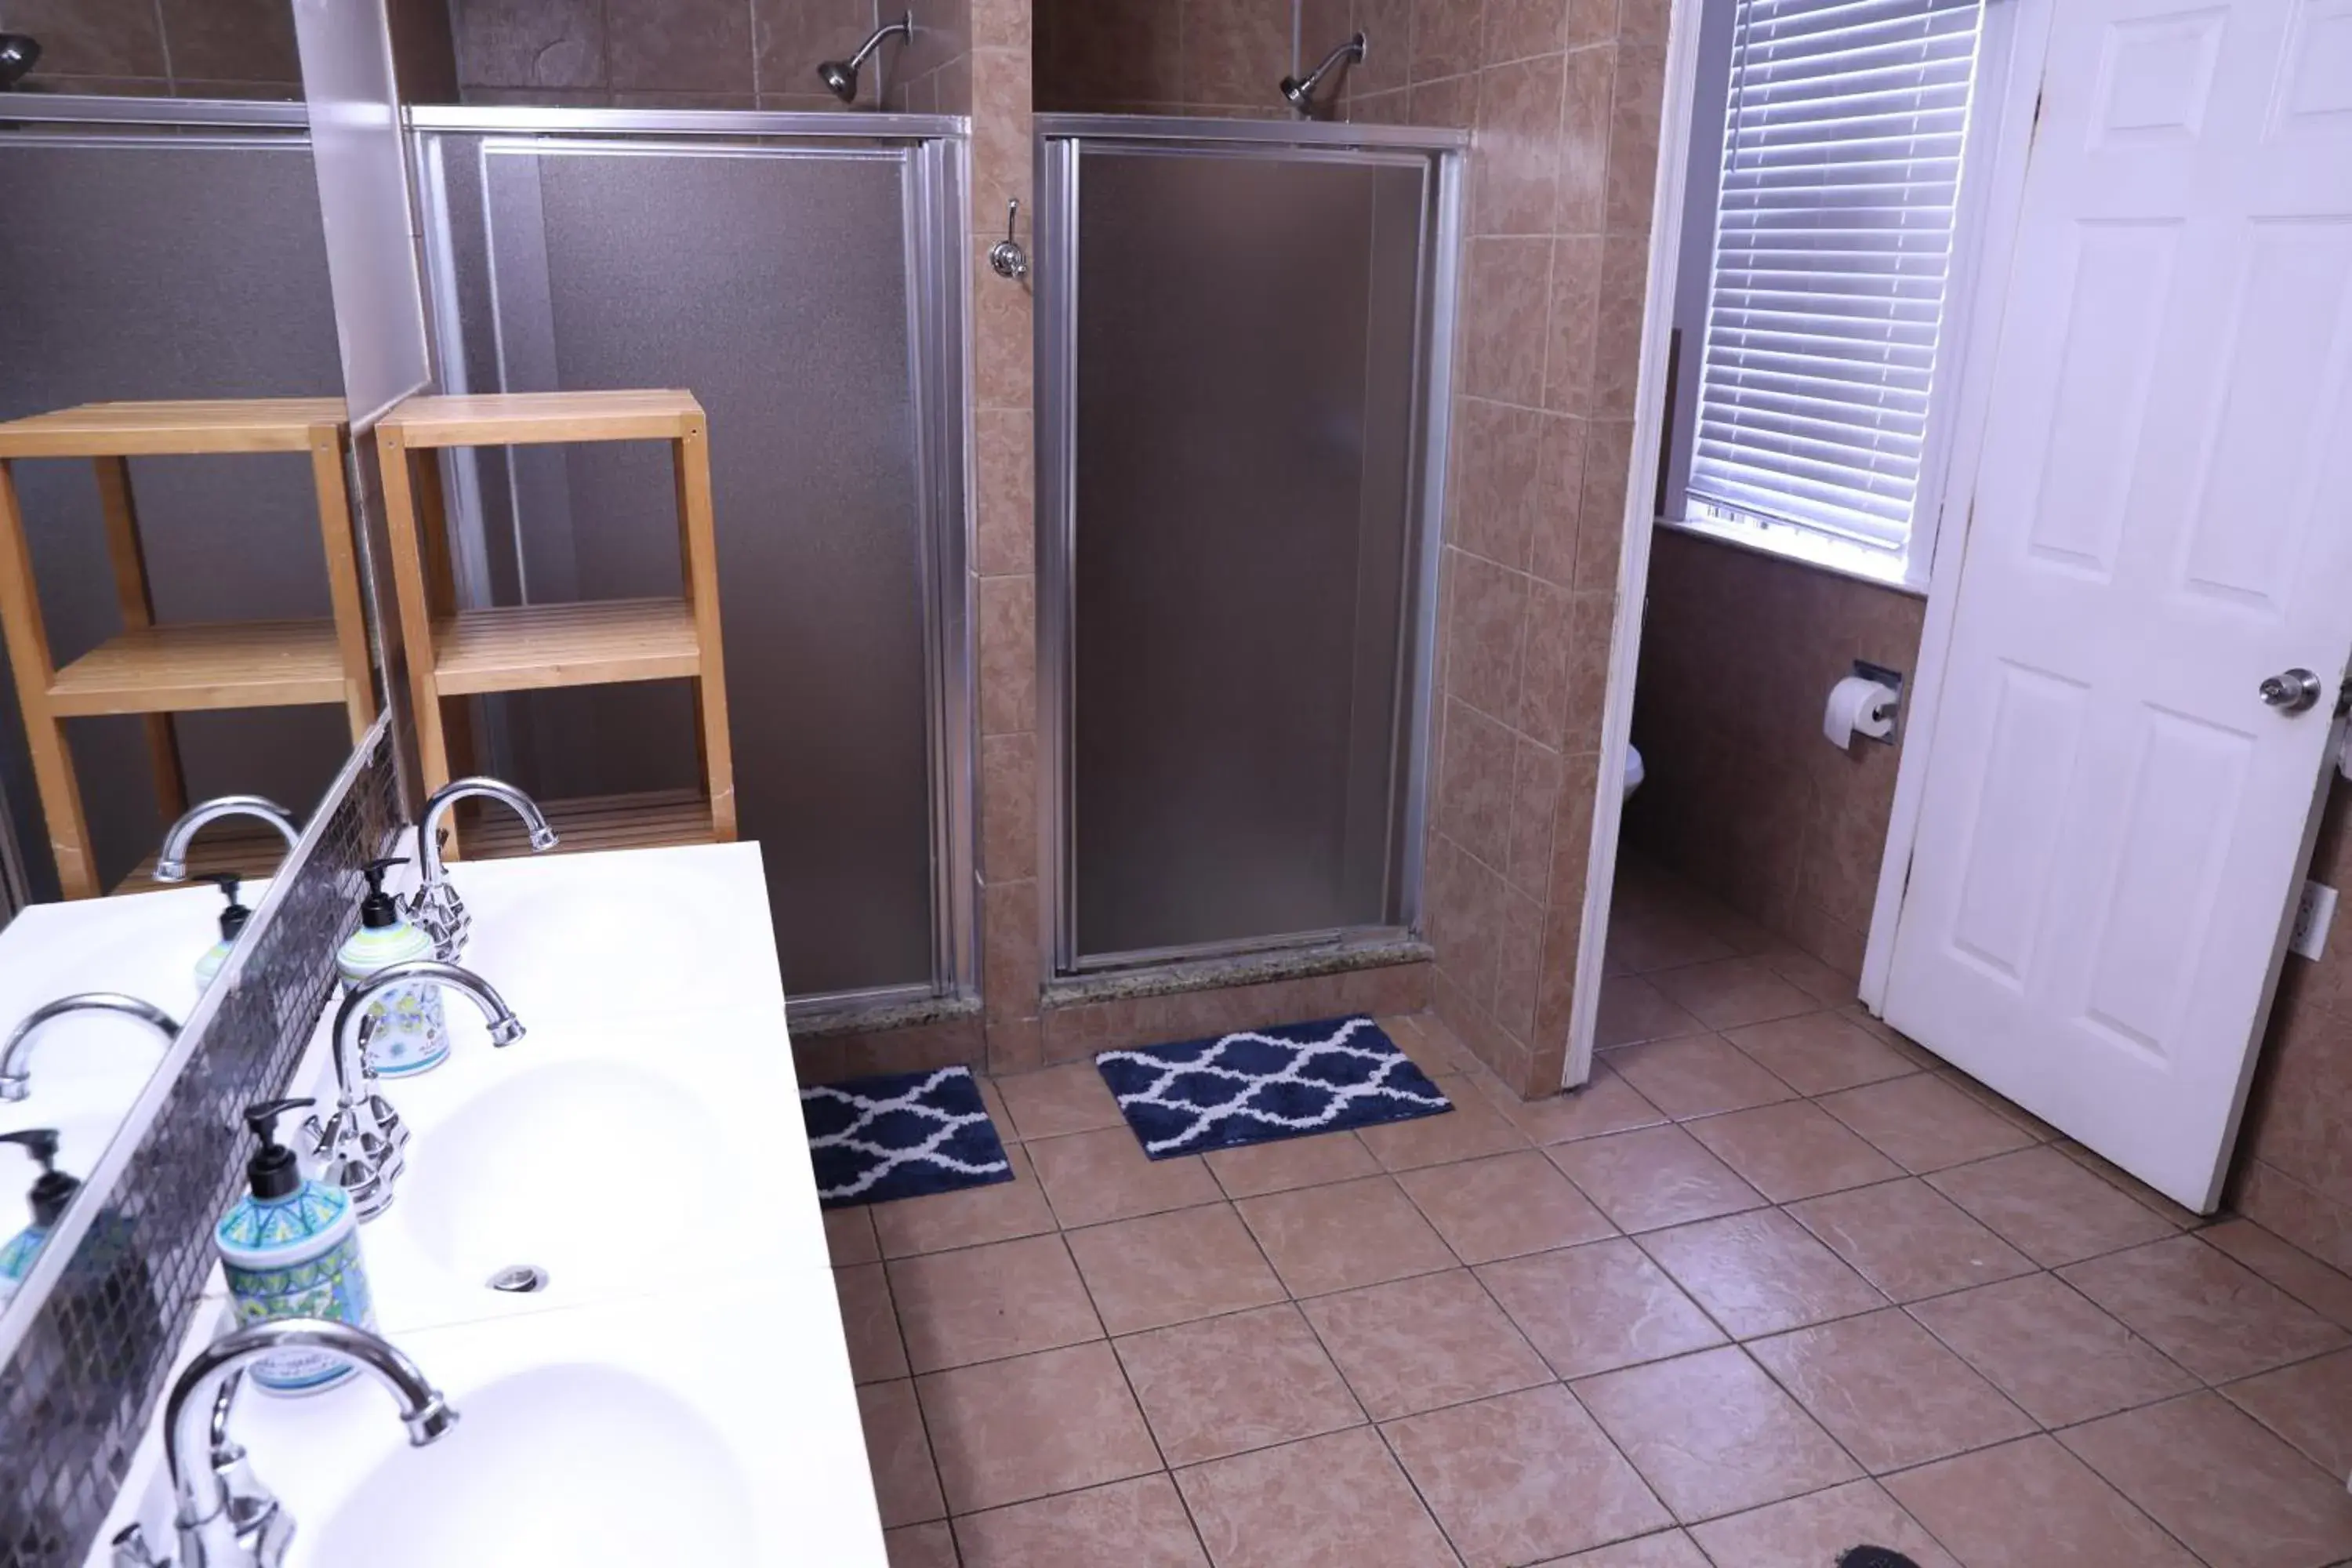 Bathroom in Duo Housing